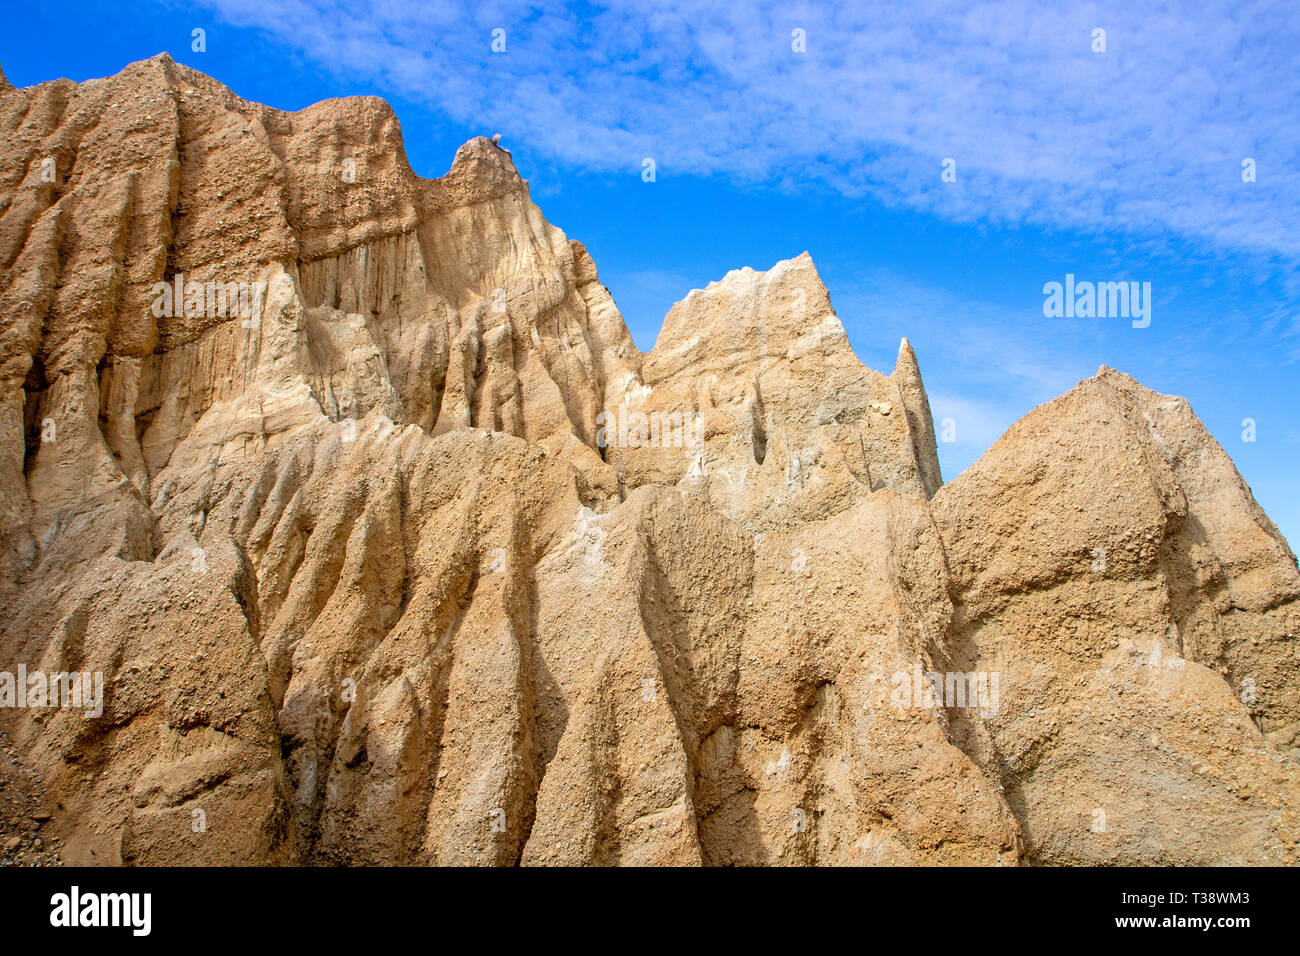 The Clay Cliffs at Omarama Stock Photo